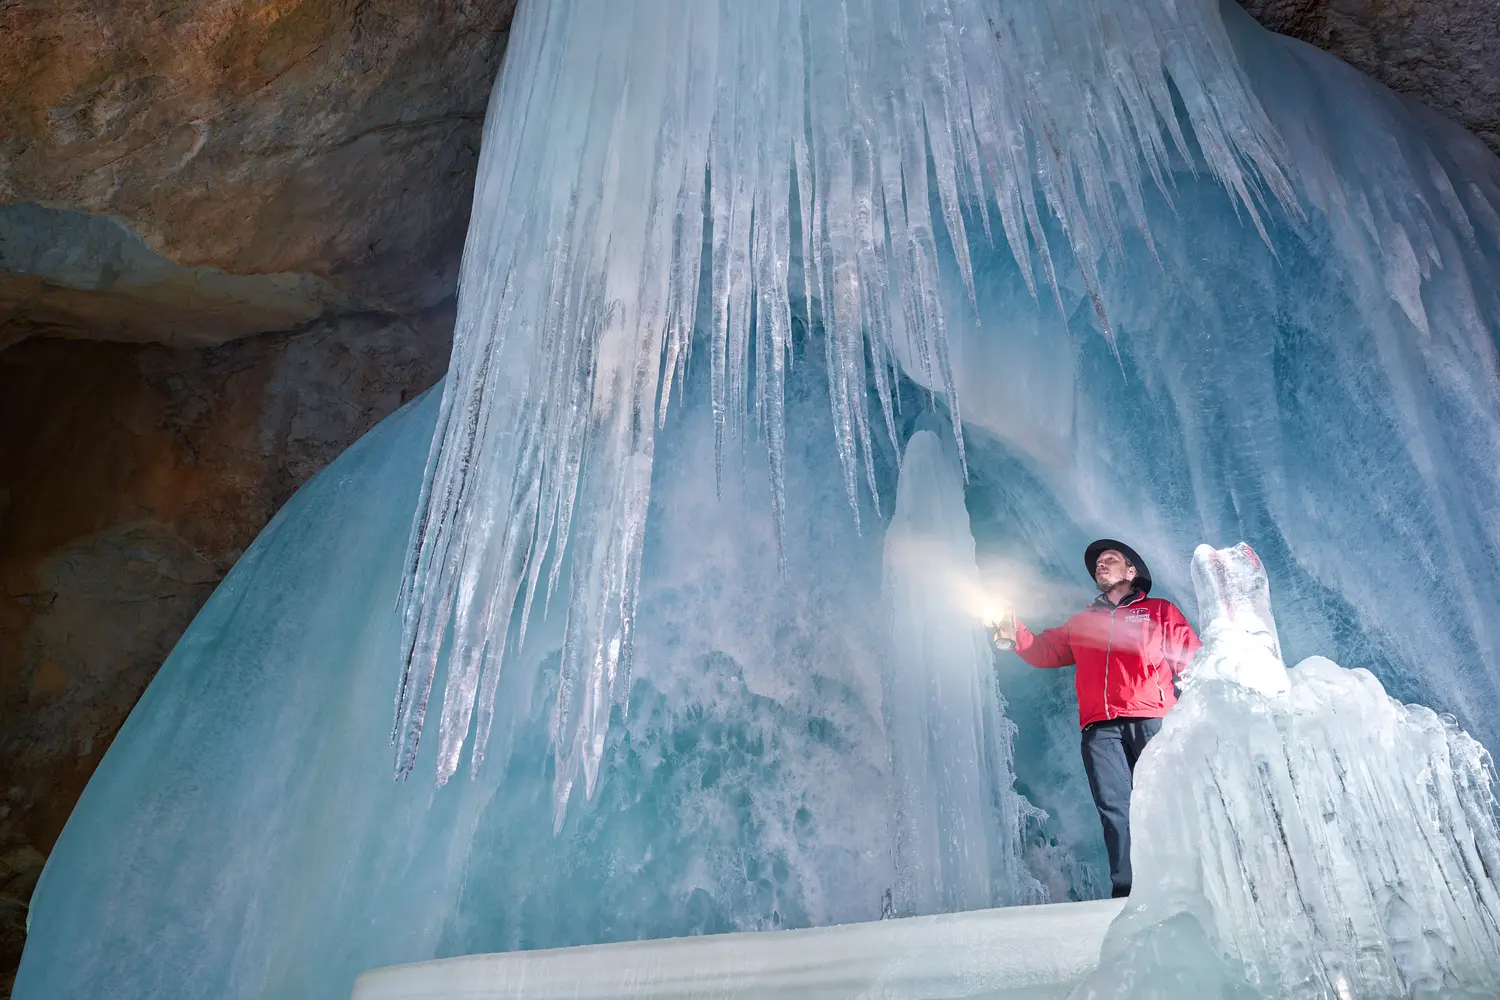 Eisriesenwelt ice cave in Werfen, Austria